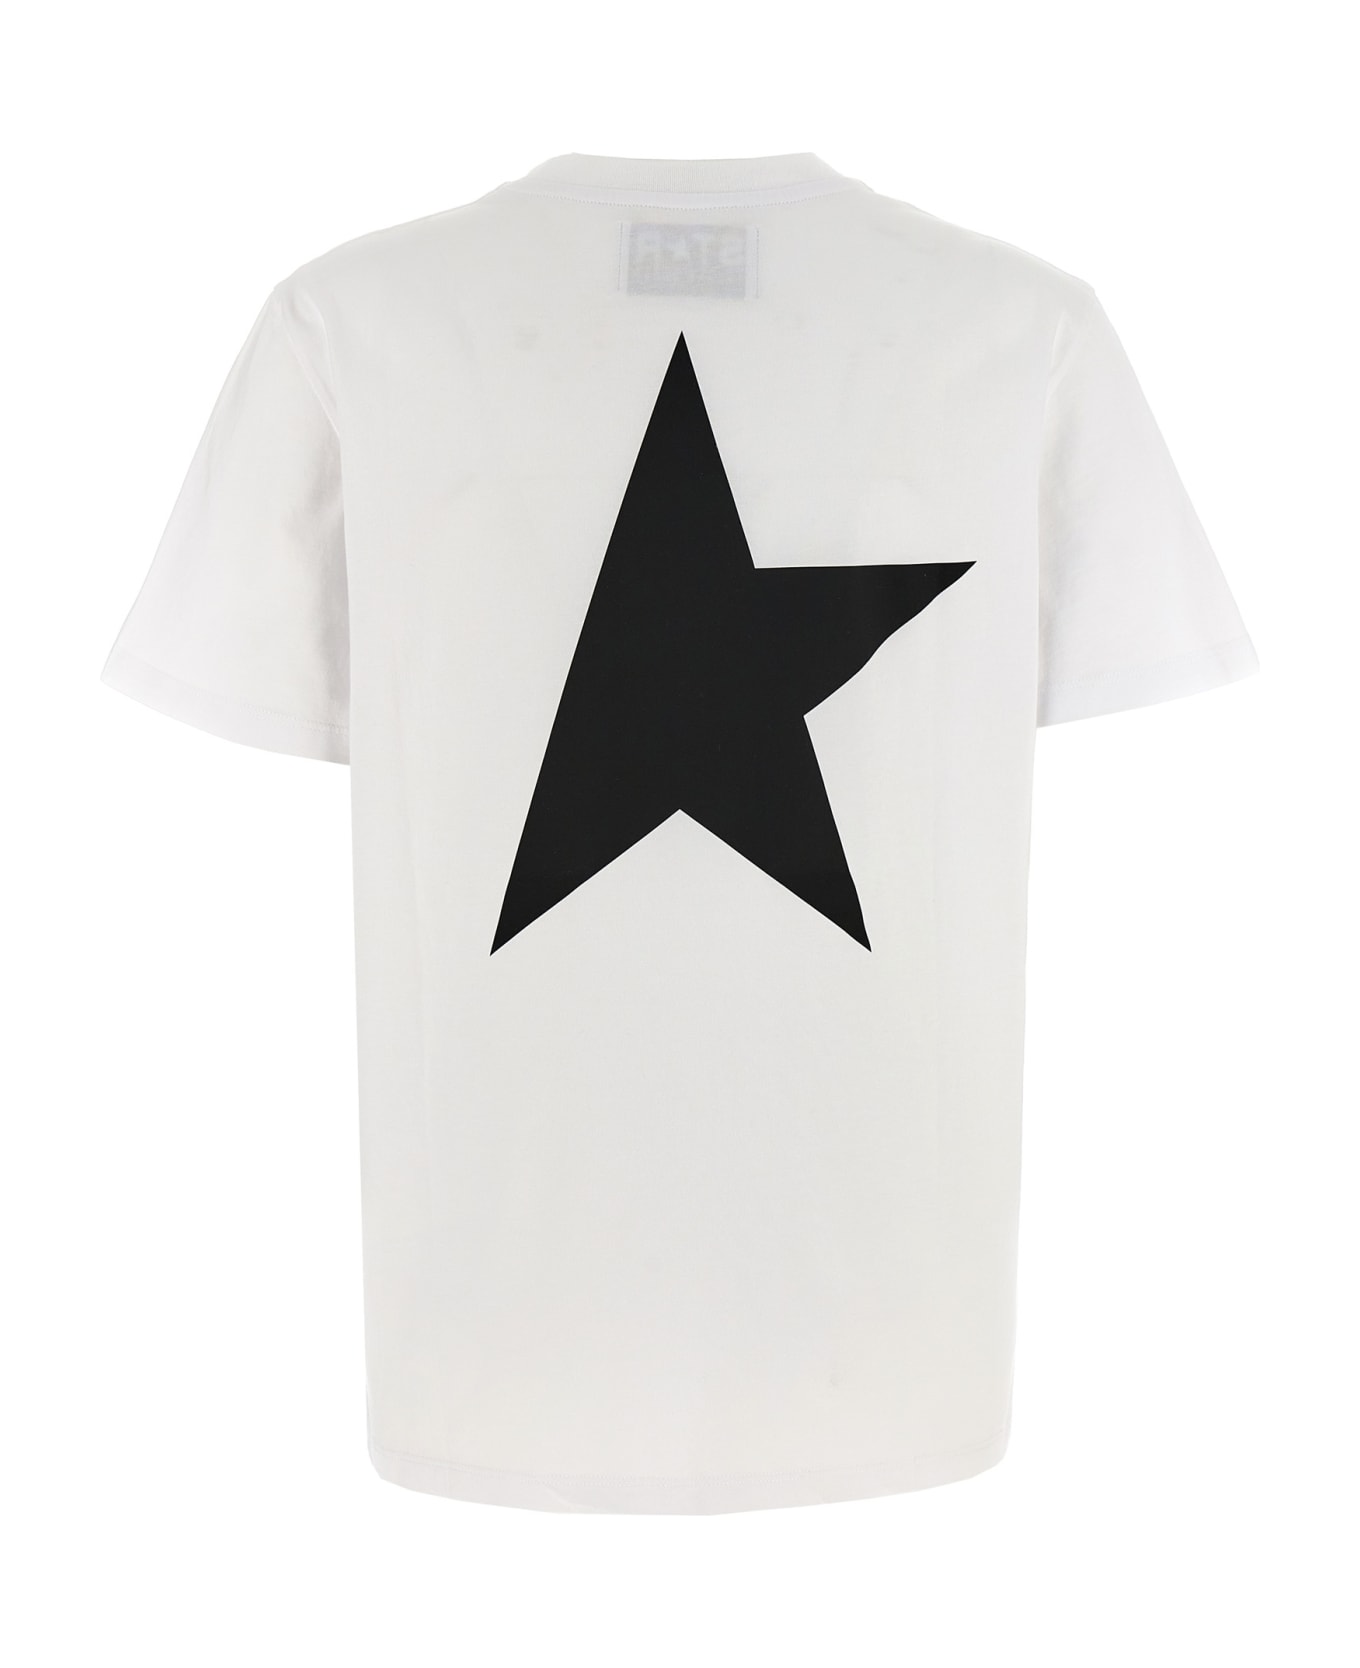 Golden Goose 'star' T-shirt - White/Black